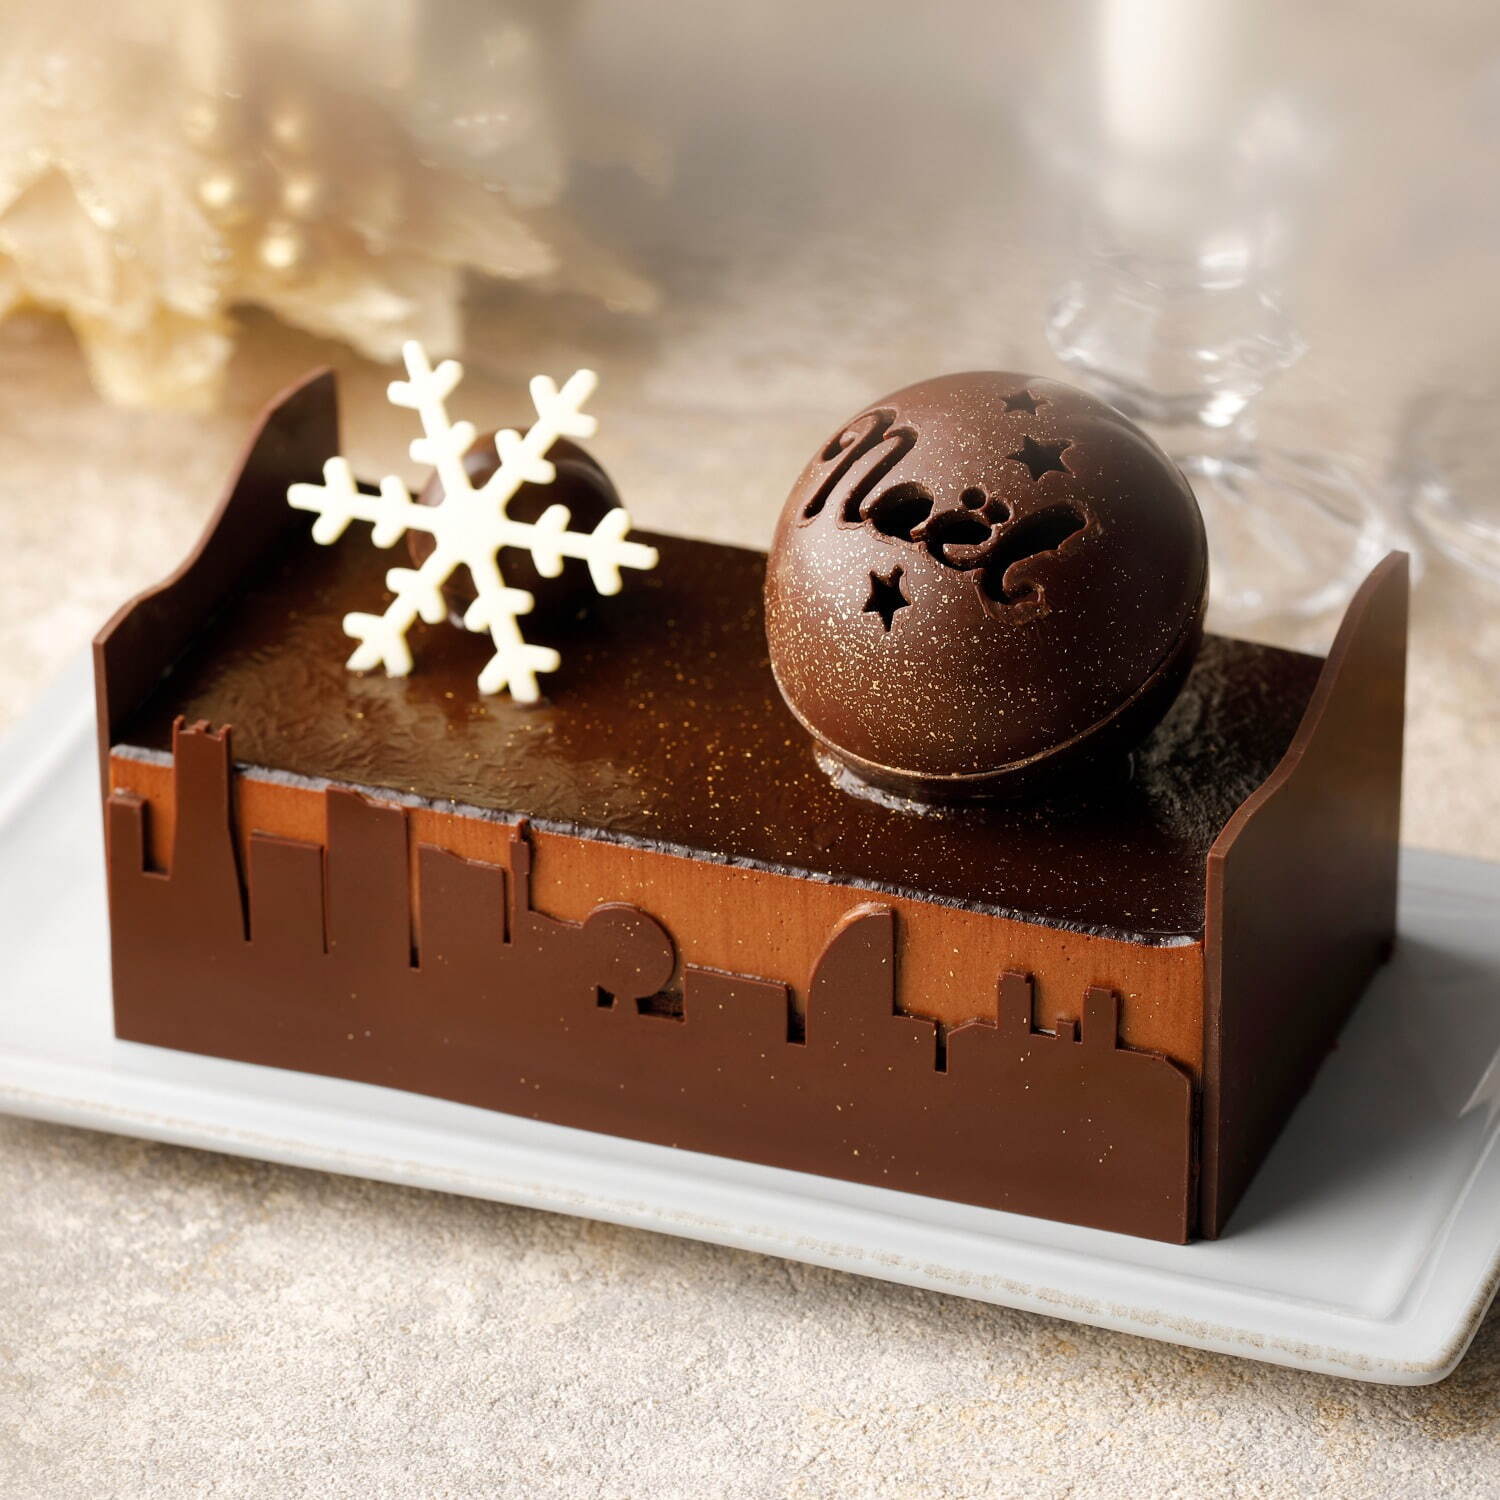 チョコレート専門店「バニラビーンズ」クリスマスケーキ、“みなとみらいの夜”イメージの9層チョコケーキ｜写真1